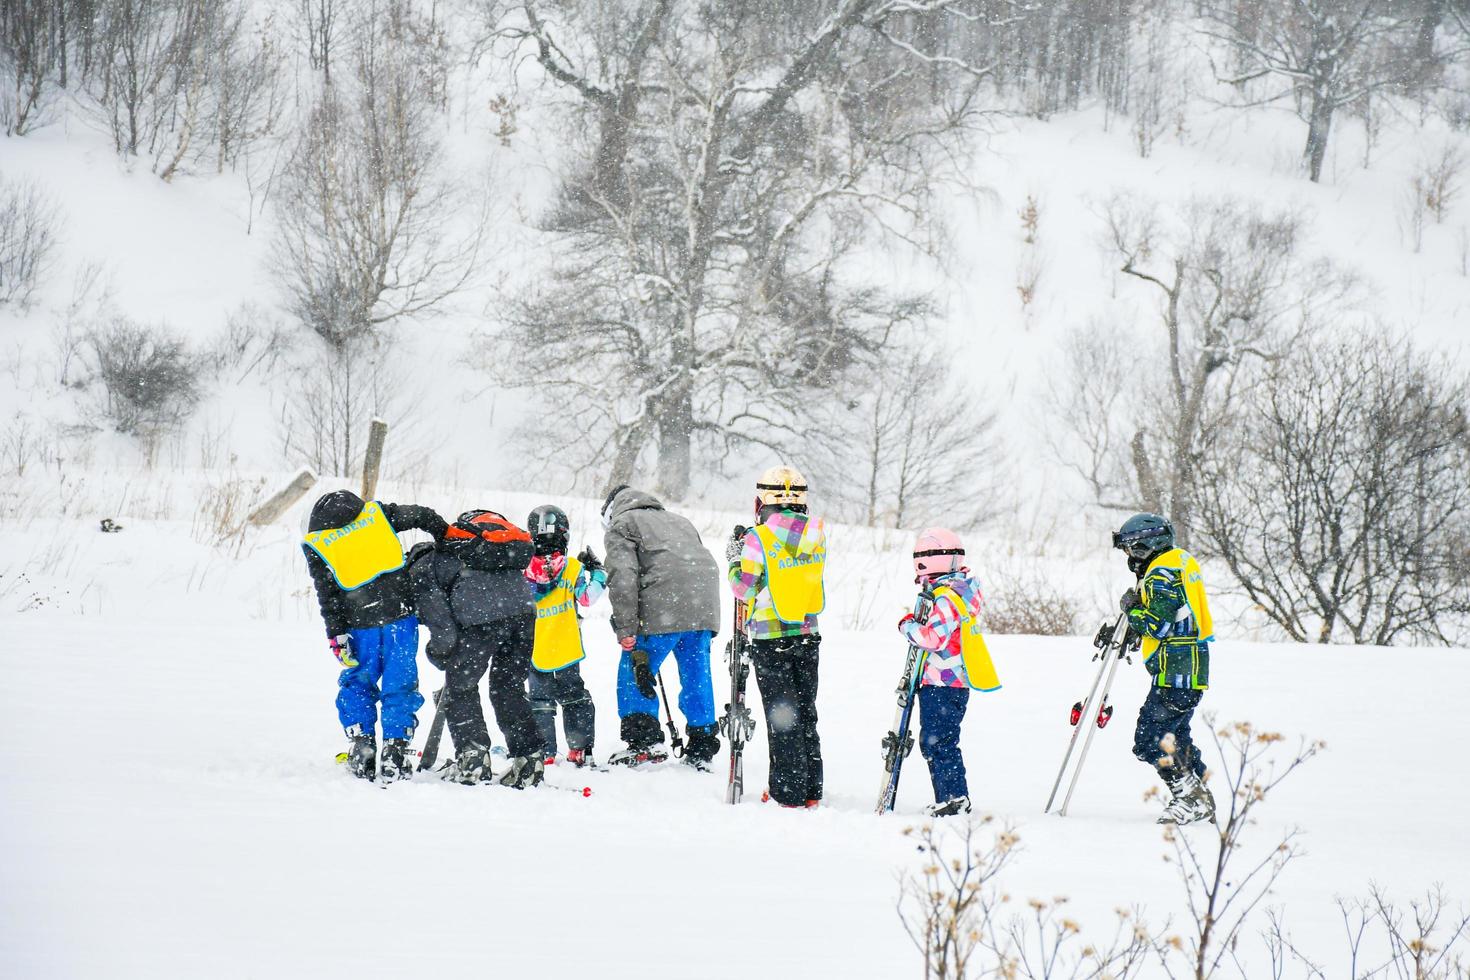 groupe d'enfants apprennent à skier à l'académie de ski de bakuriani, géorgie photo